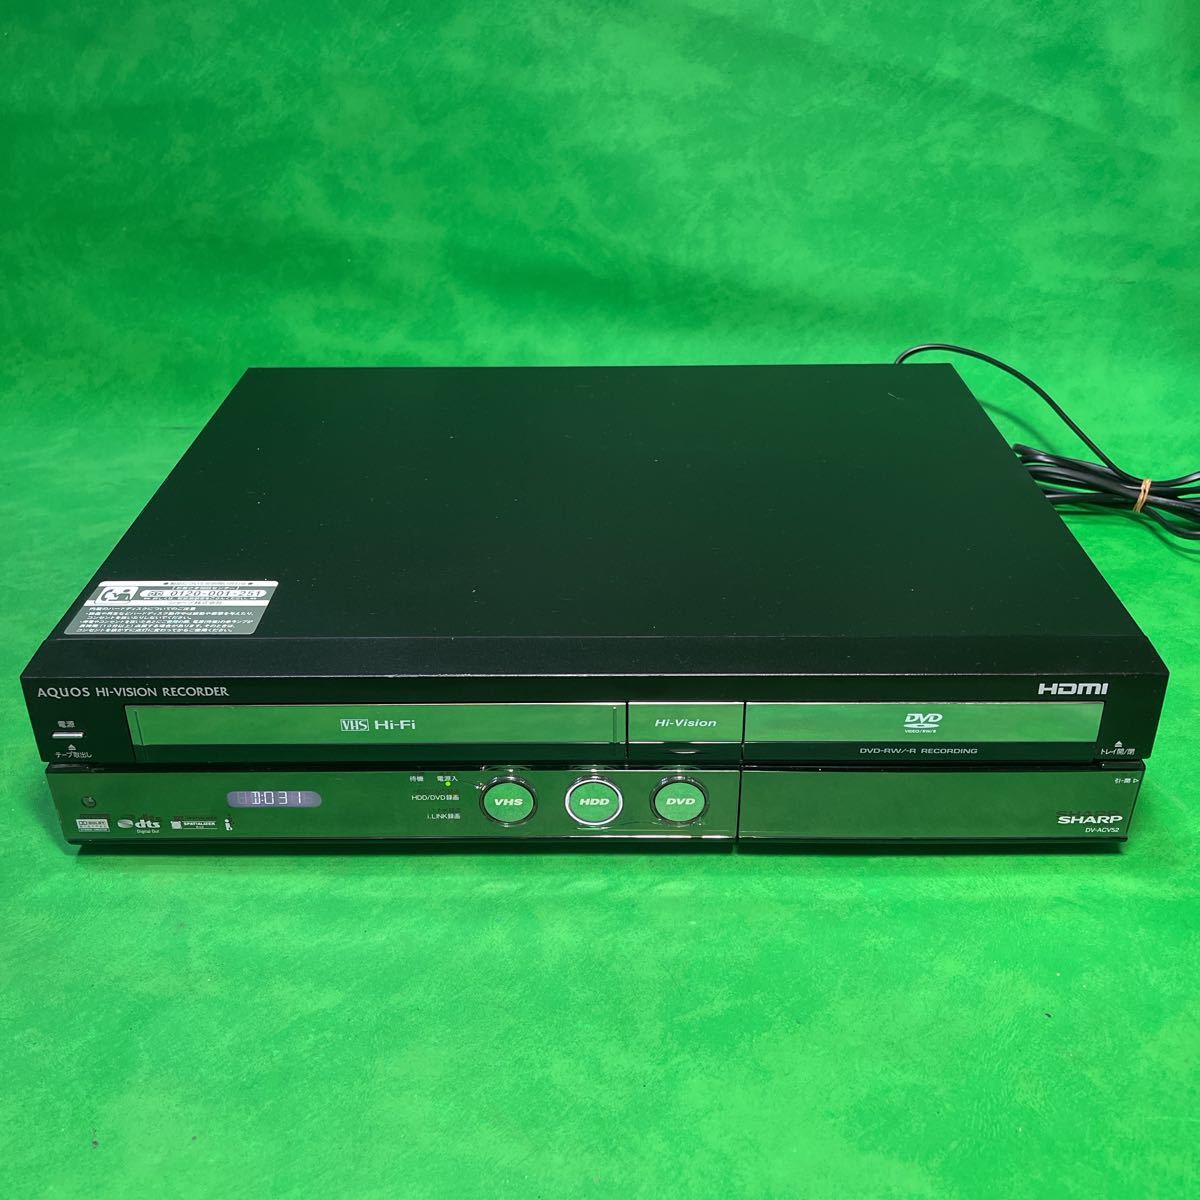 セール超特価 地デジ対応 シャープ DV-ACV52　HDDビデオ一体型DVDレコーダ DVDレコーダー